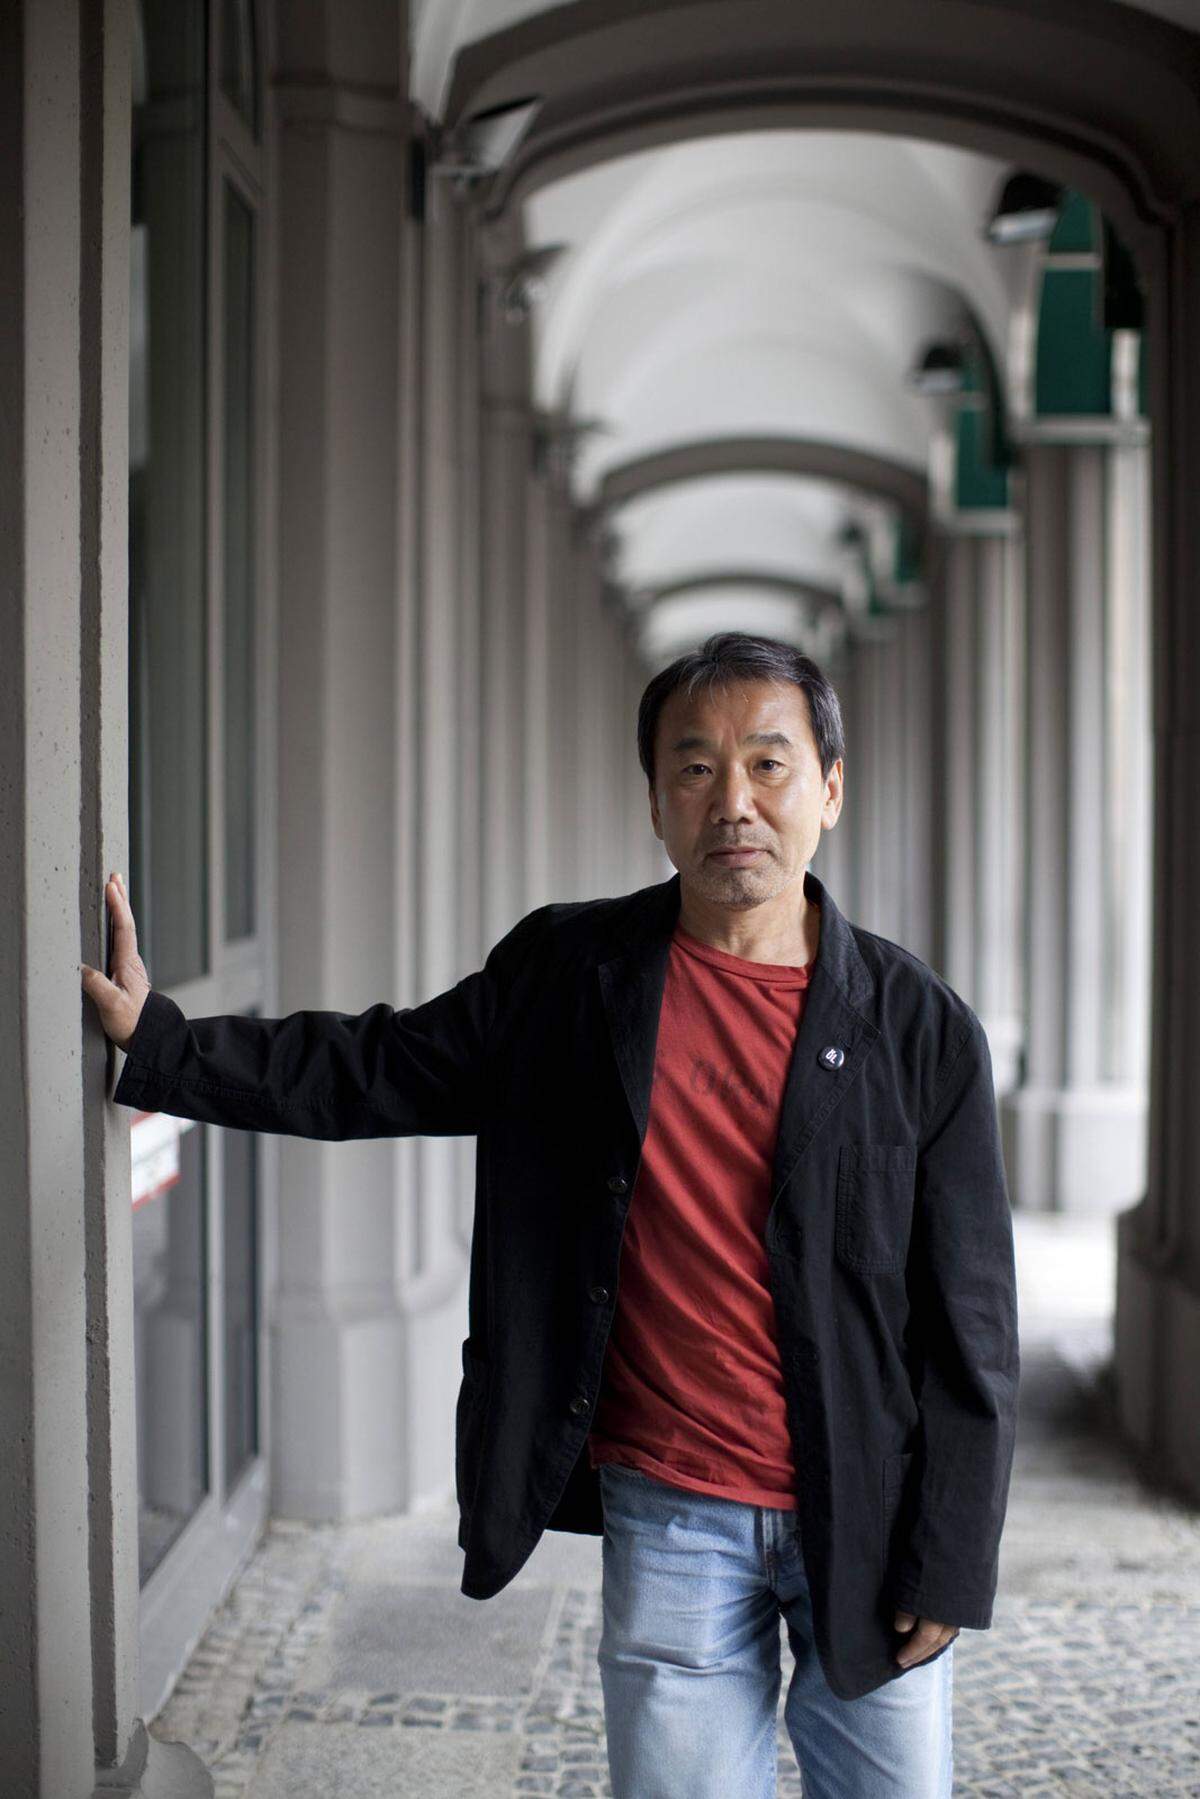 Seit vielen Jahren läuft der bekannte Schriftsteller Haruki Murakami jährlich einen Marathon. 2006 legte er im Big Apple eine Zeit von 4:10:17 hin.